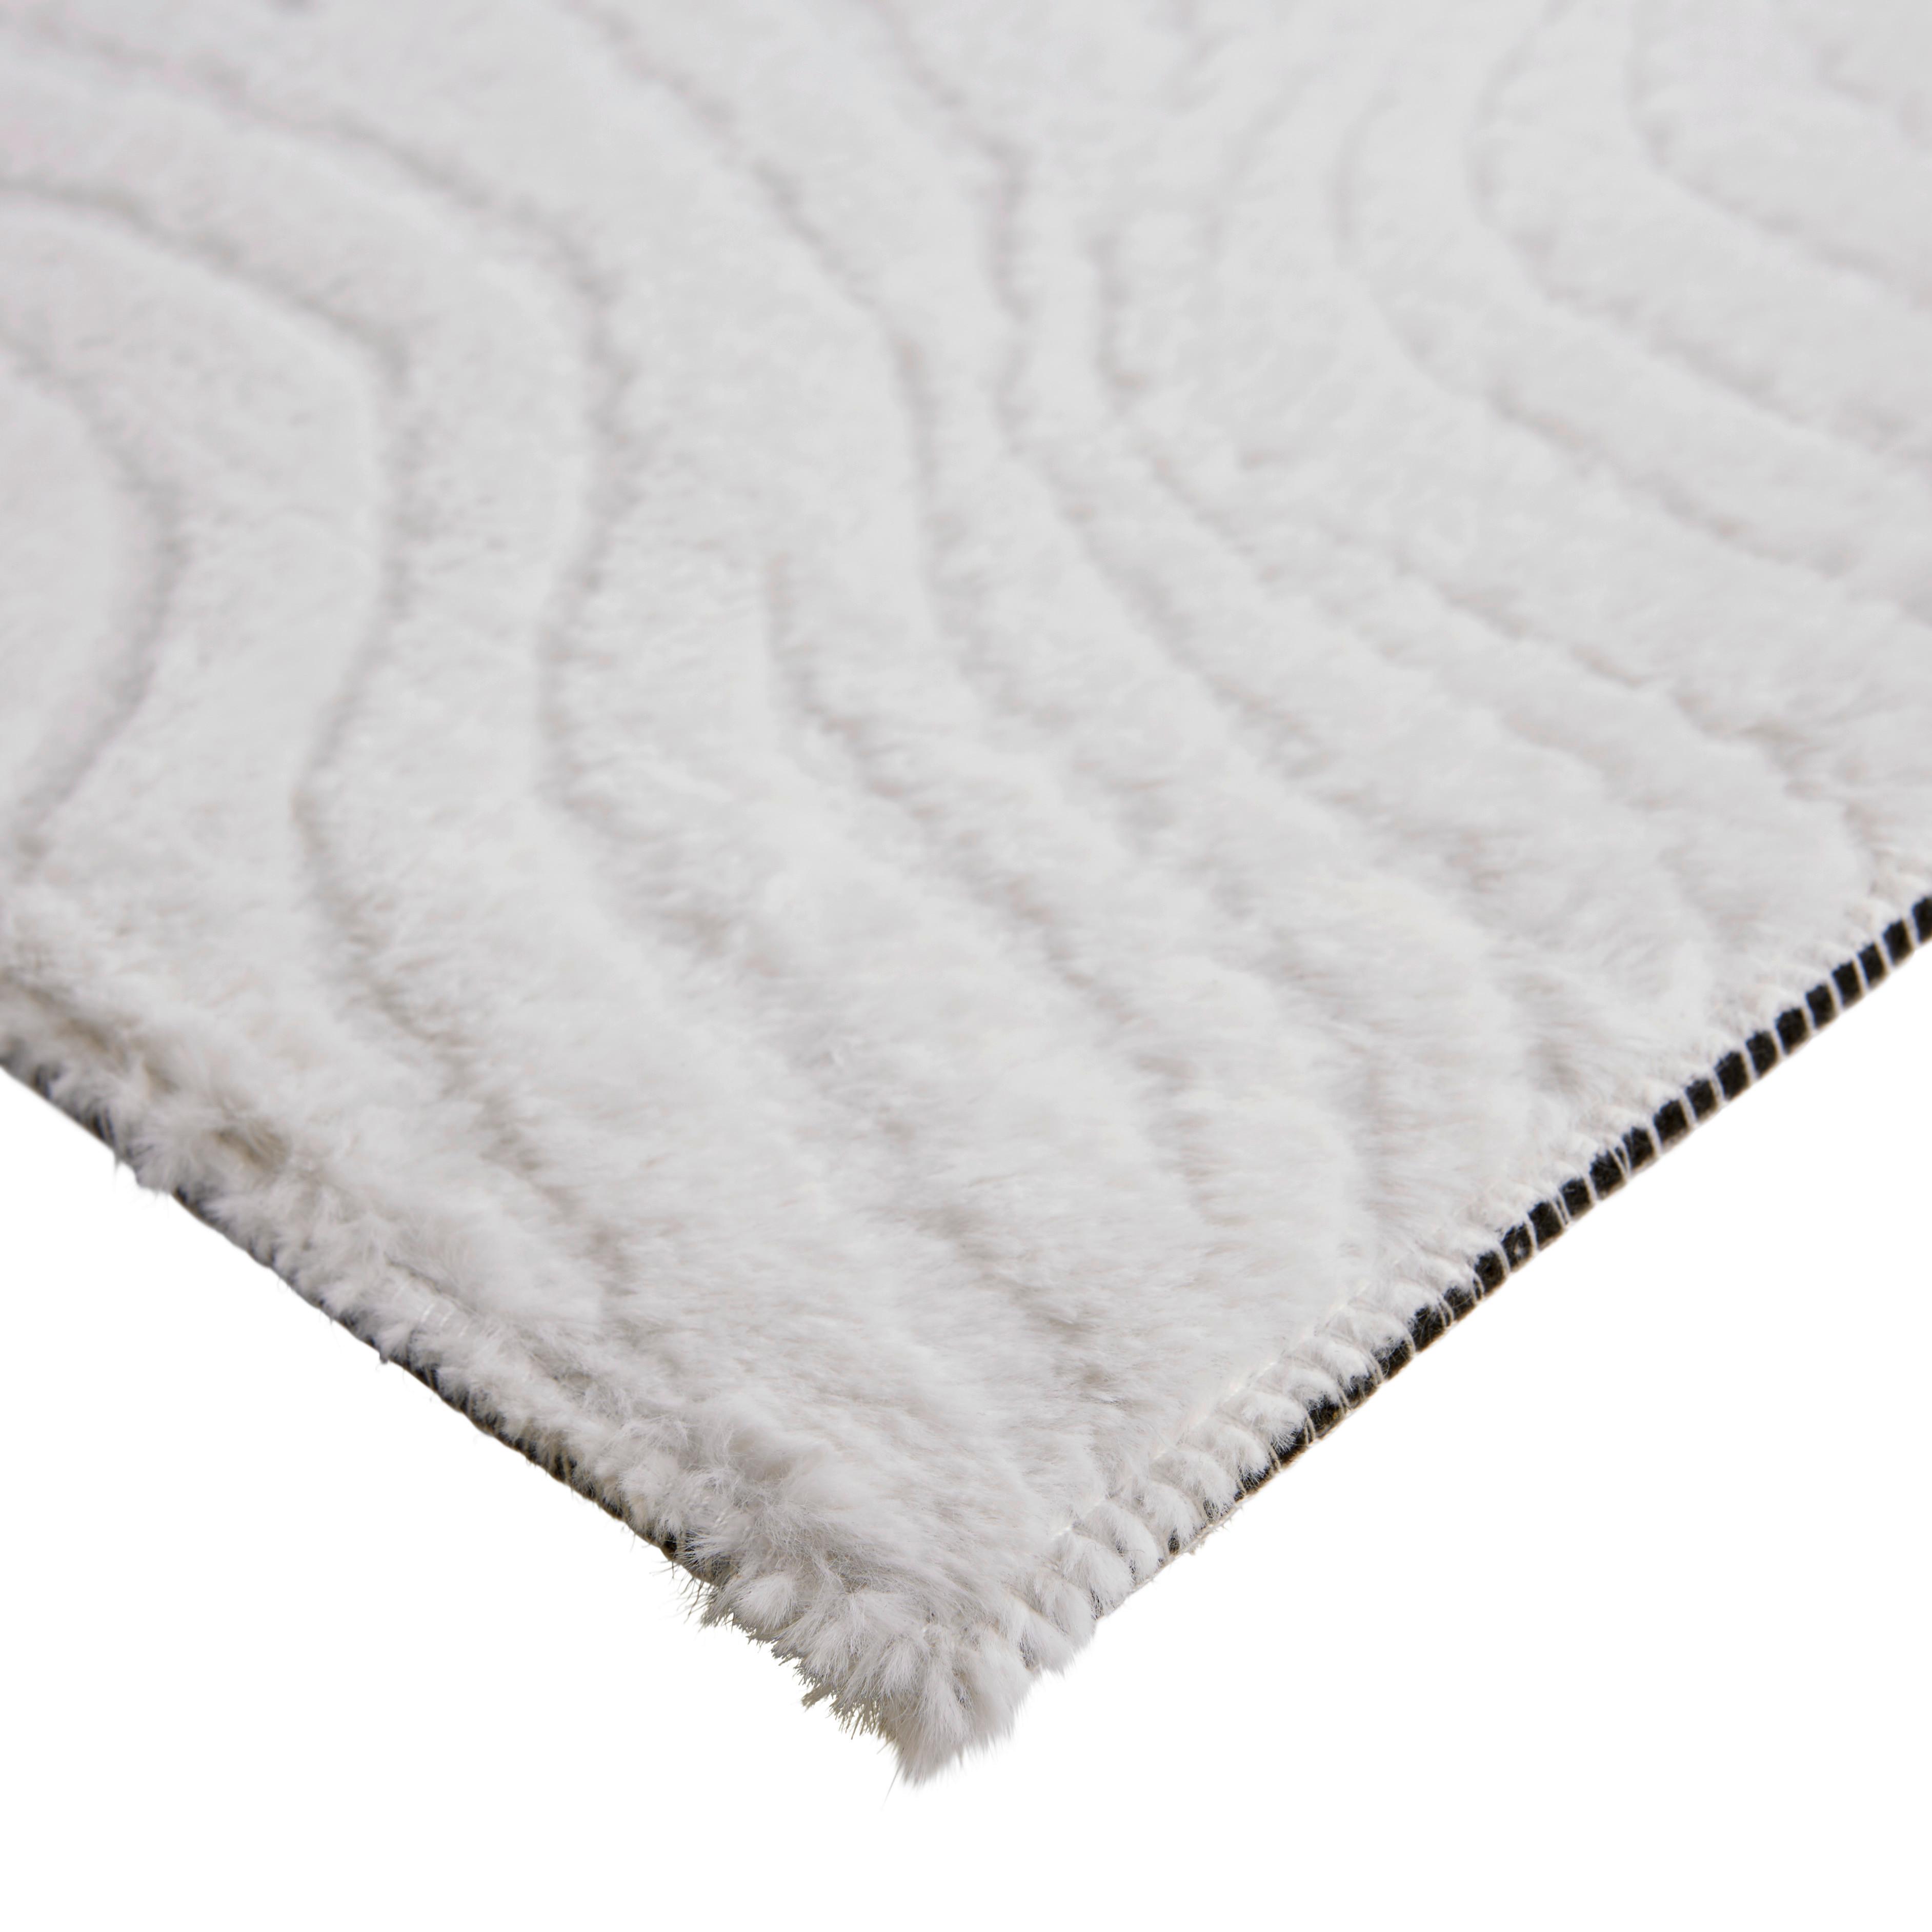 Fellteppich Mimi Weiß 160x220 cm - Weiß, ROMANTIK / LANDHAUS, Textil (160/220cm) - James Wood